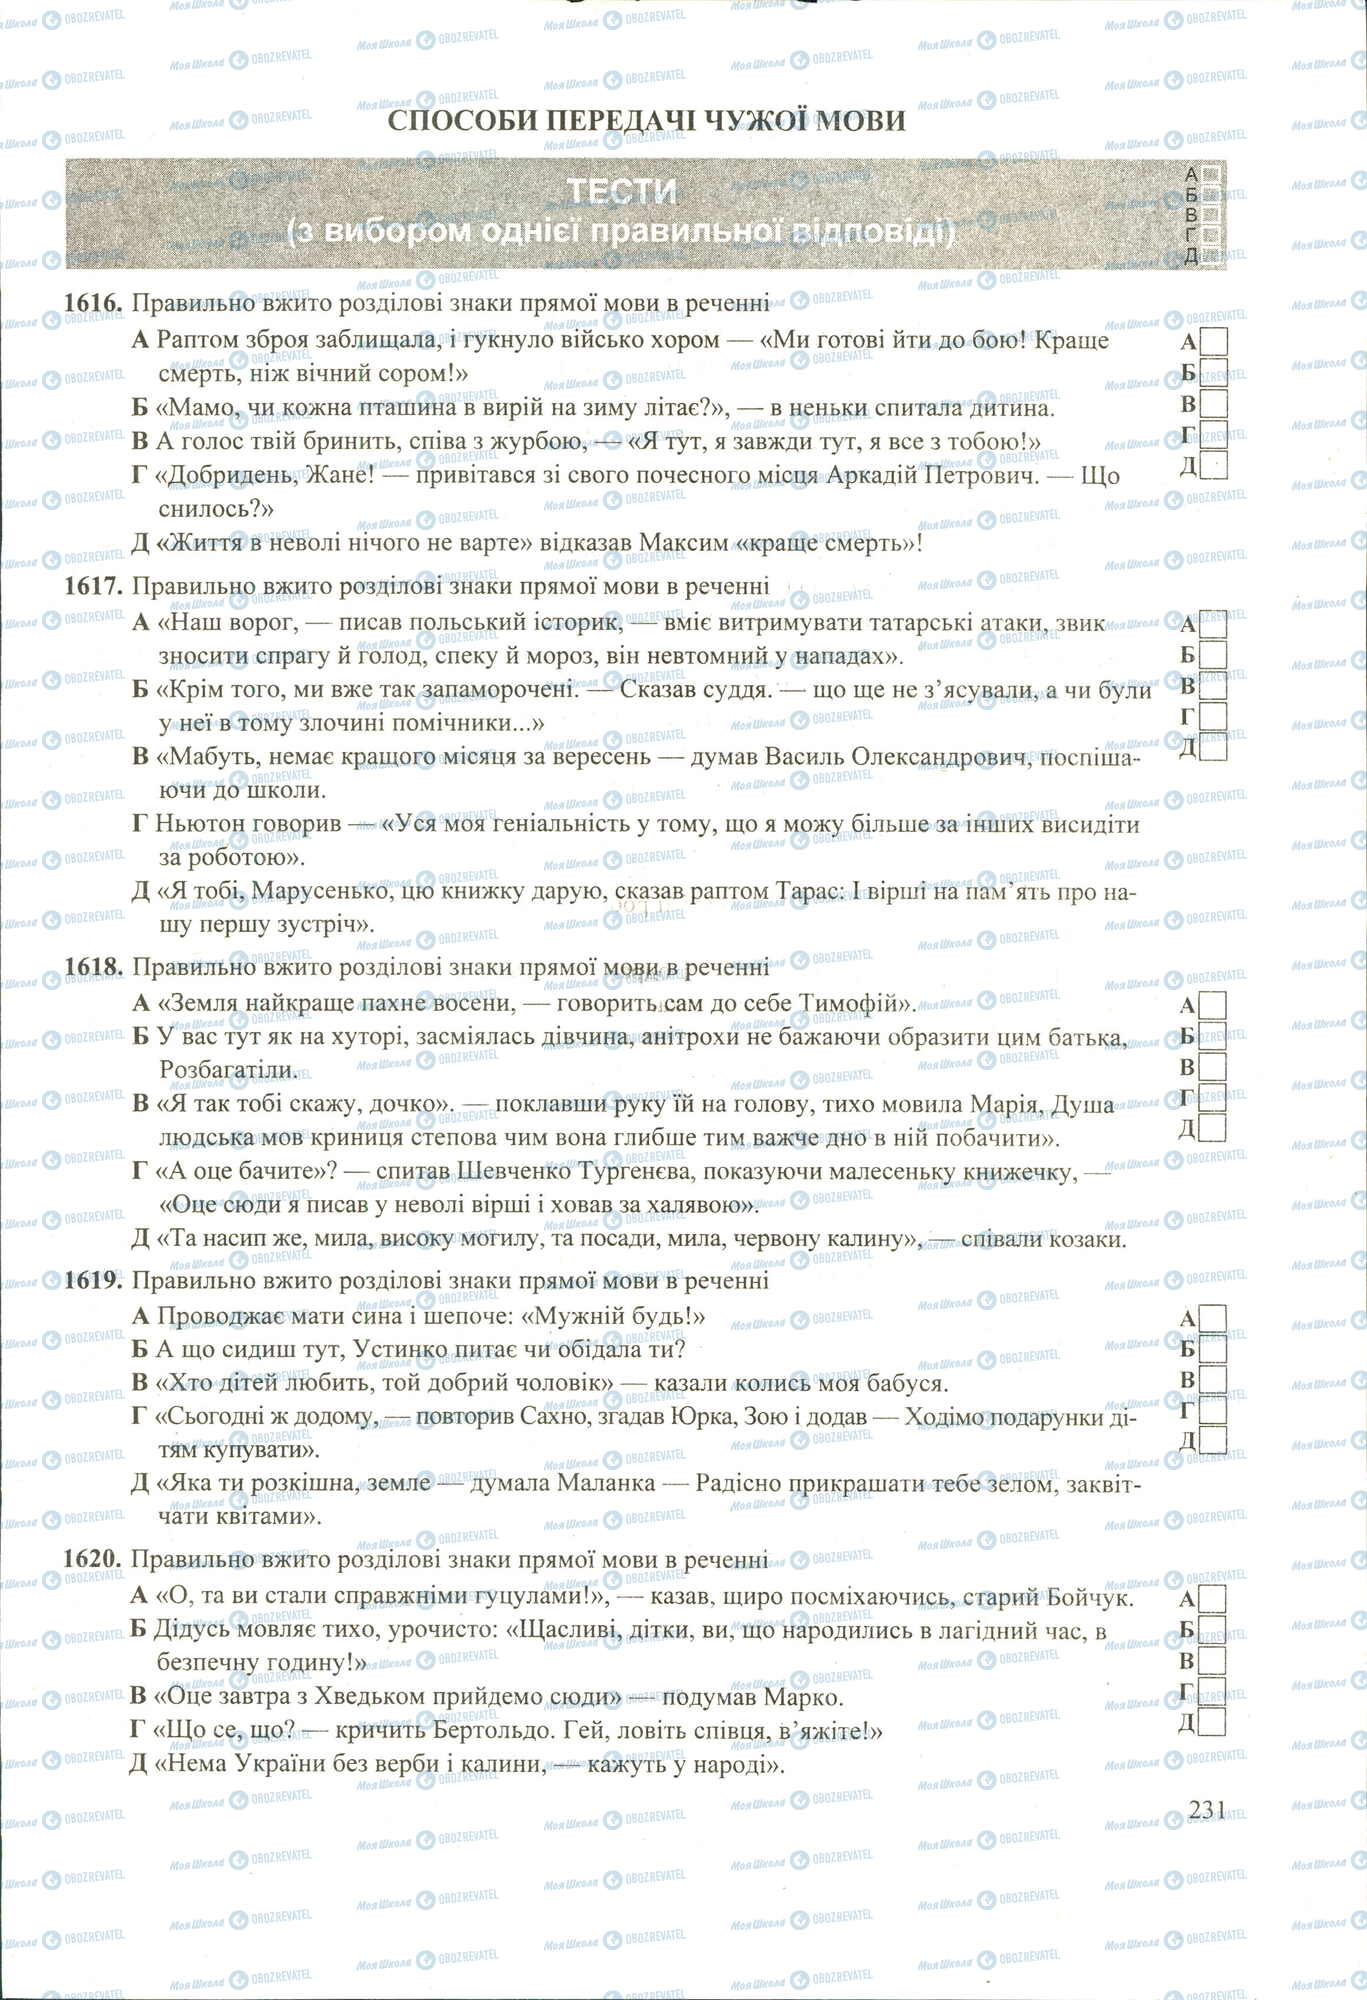 ЗНО Укр мова 11 класс страница 1616-1620